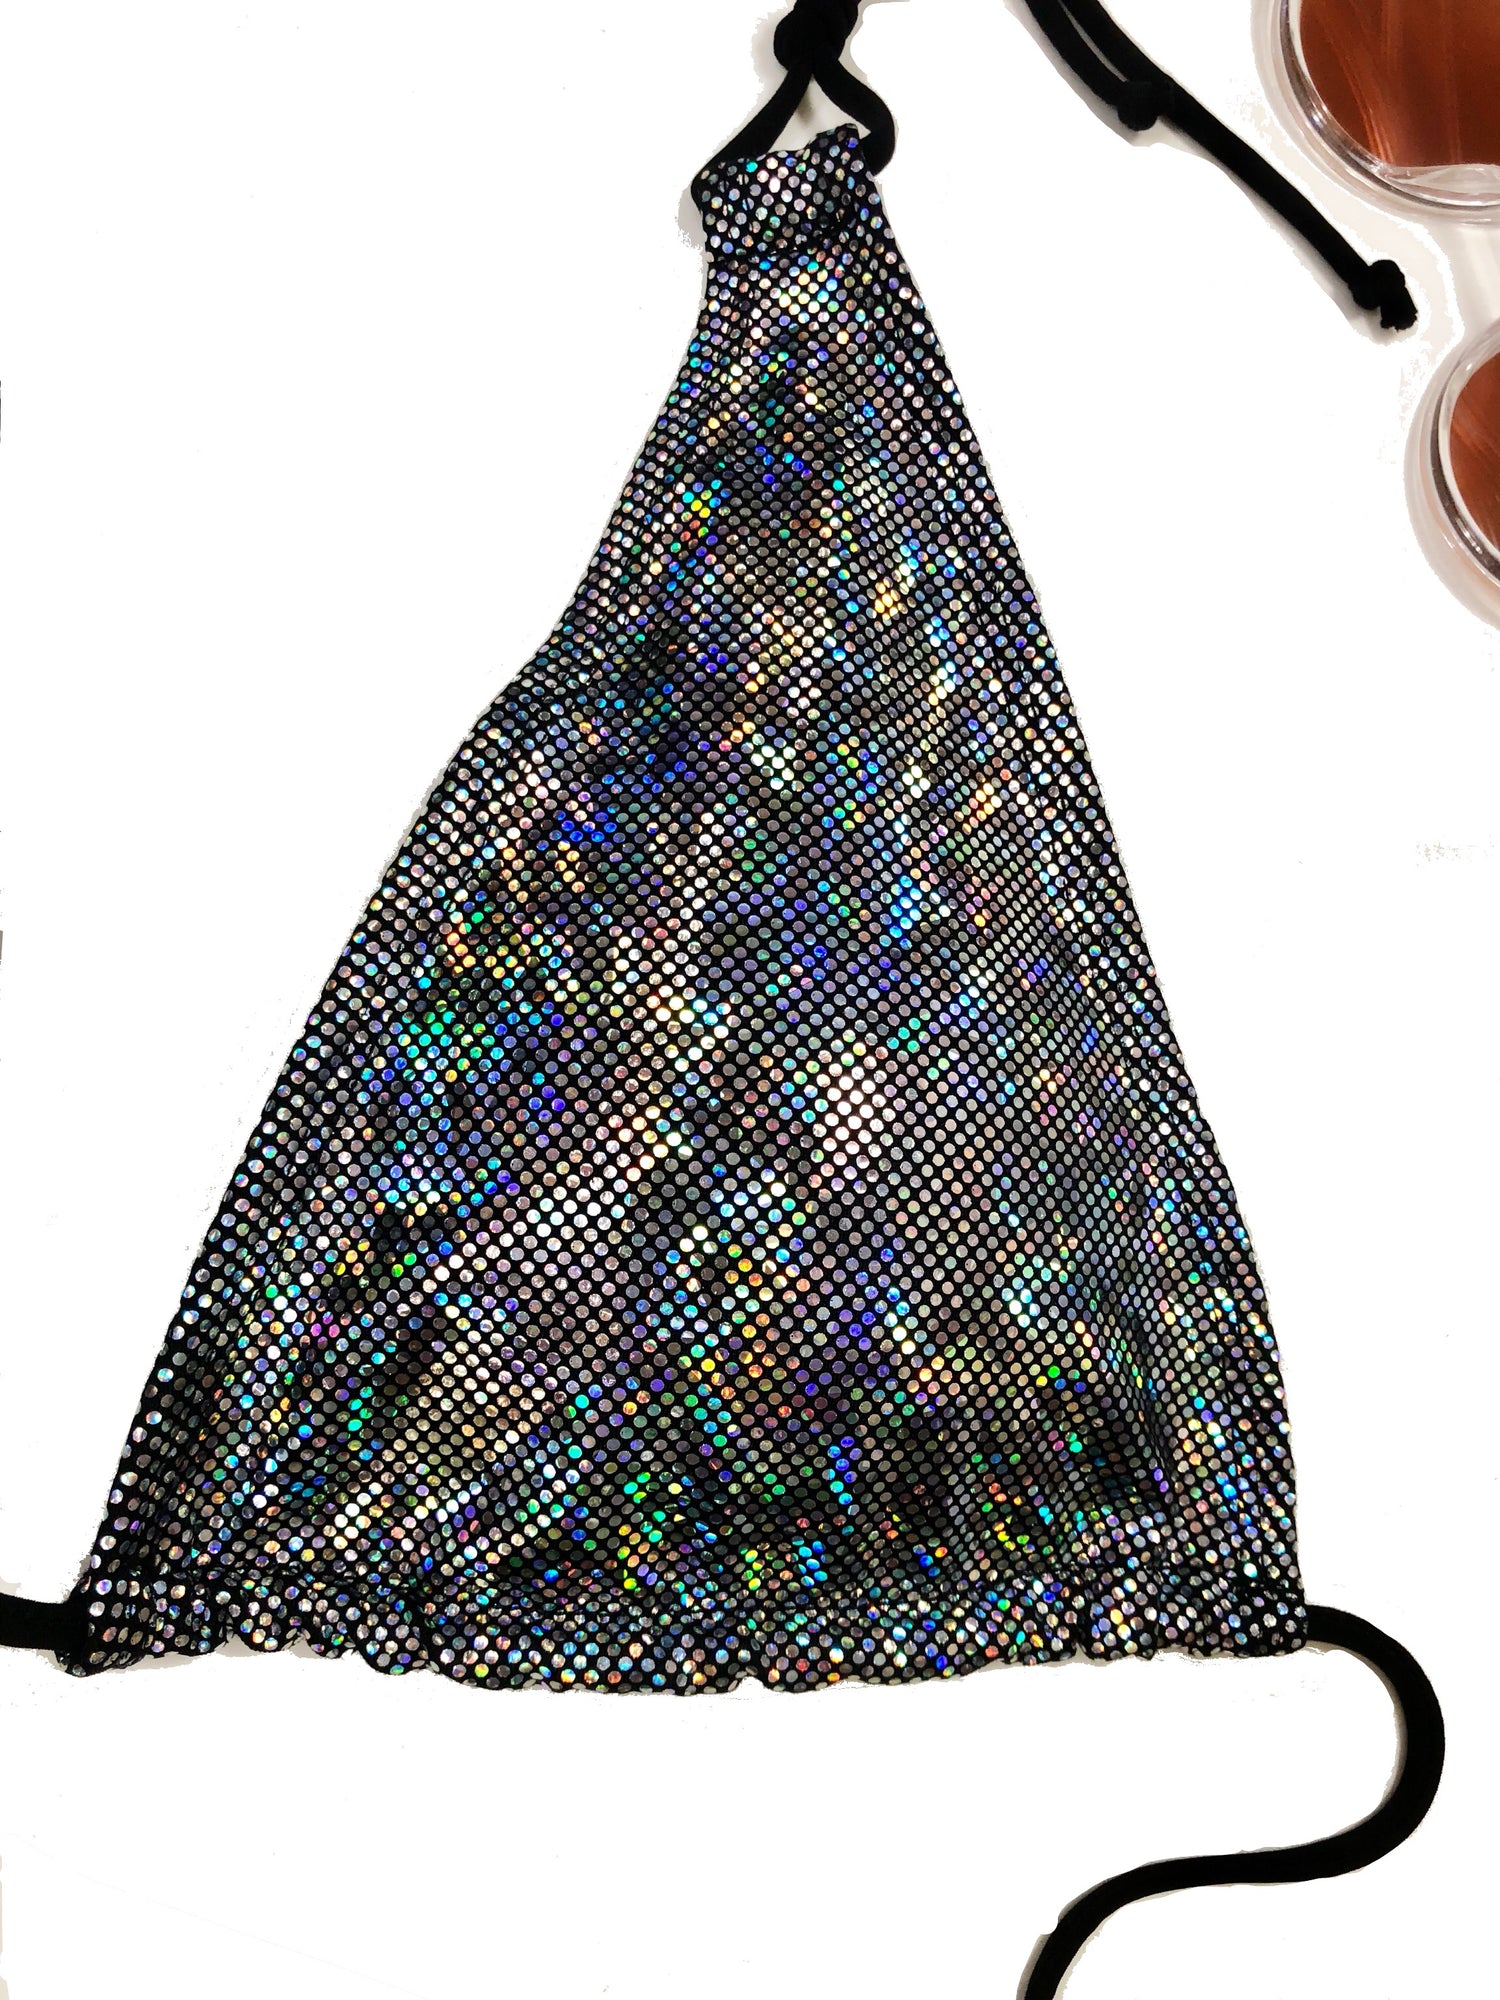 wendolin-designs - Wendolin Designs - Bikini Top - Triangular Bikini Top- Color Holographic Silver